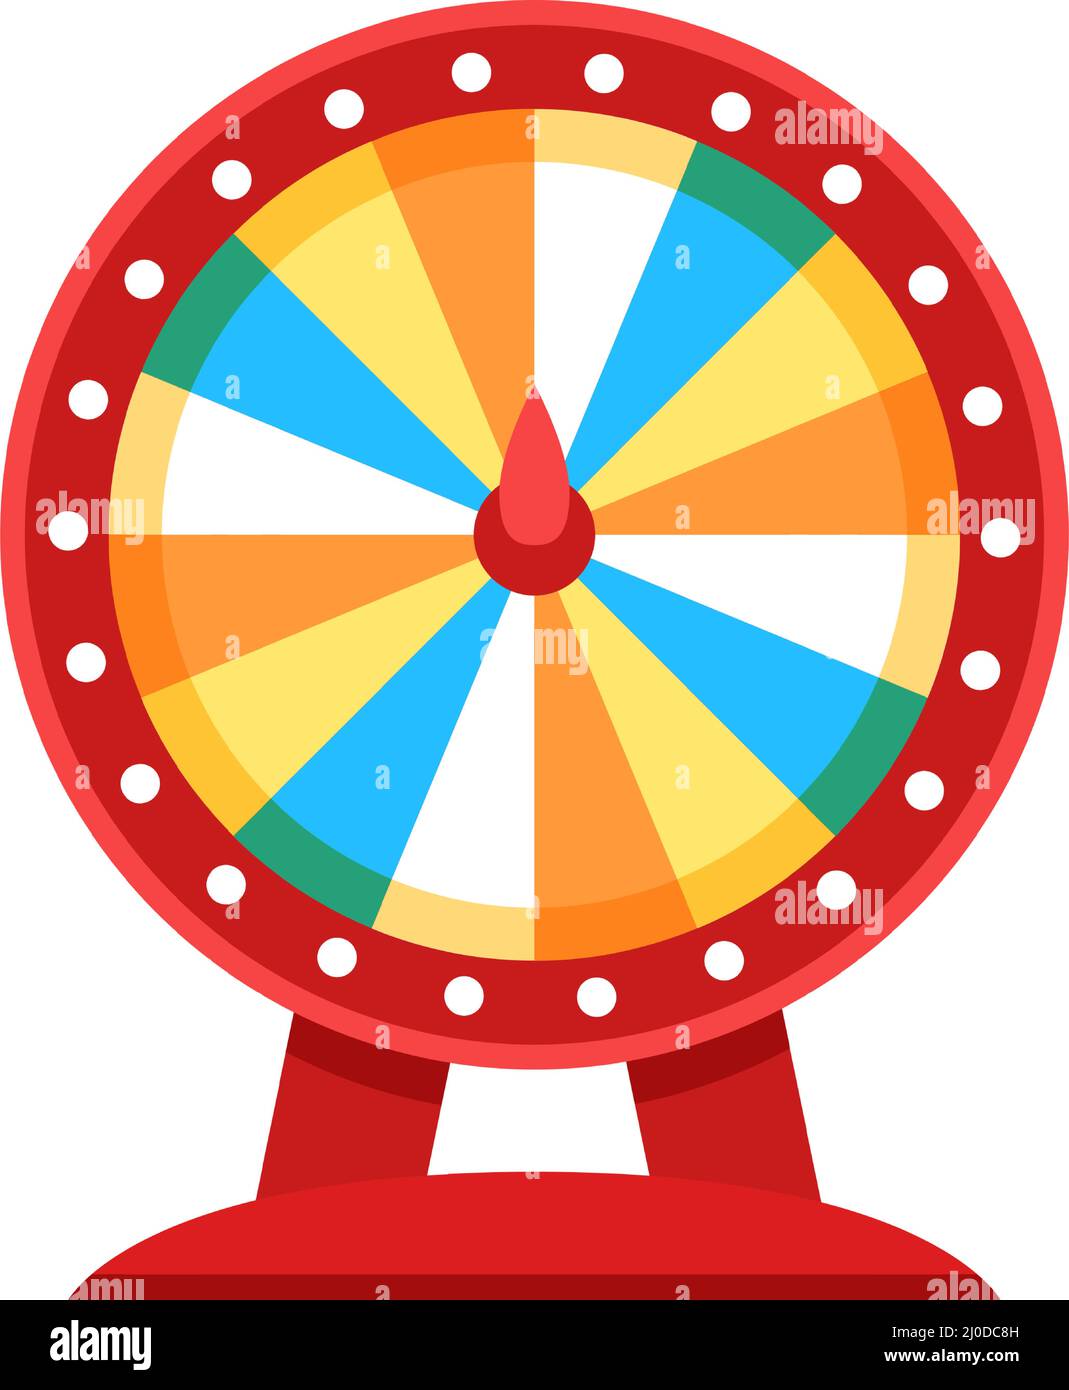 ruedas de la fortuna ruleta de la suerte que gira juego de la tirada del casino rueda de premios de colores juegos de roletas de premios de loteria juego de dinero juego de vector fijo equipo giratorio con ranuras aleatorias 2j0dc8h